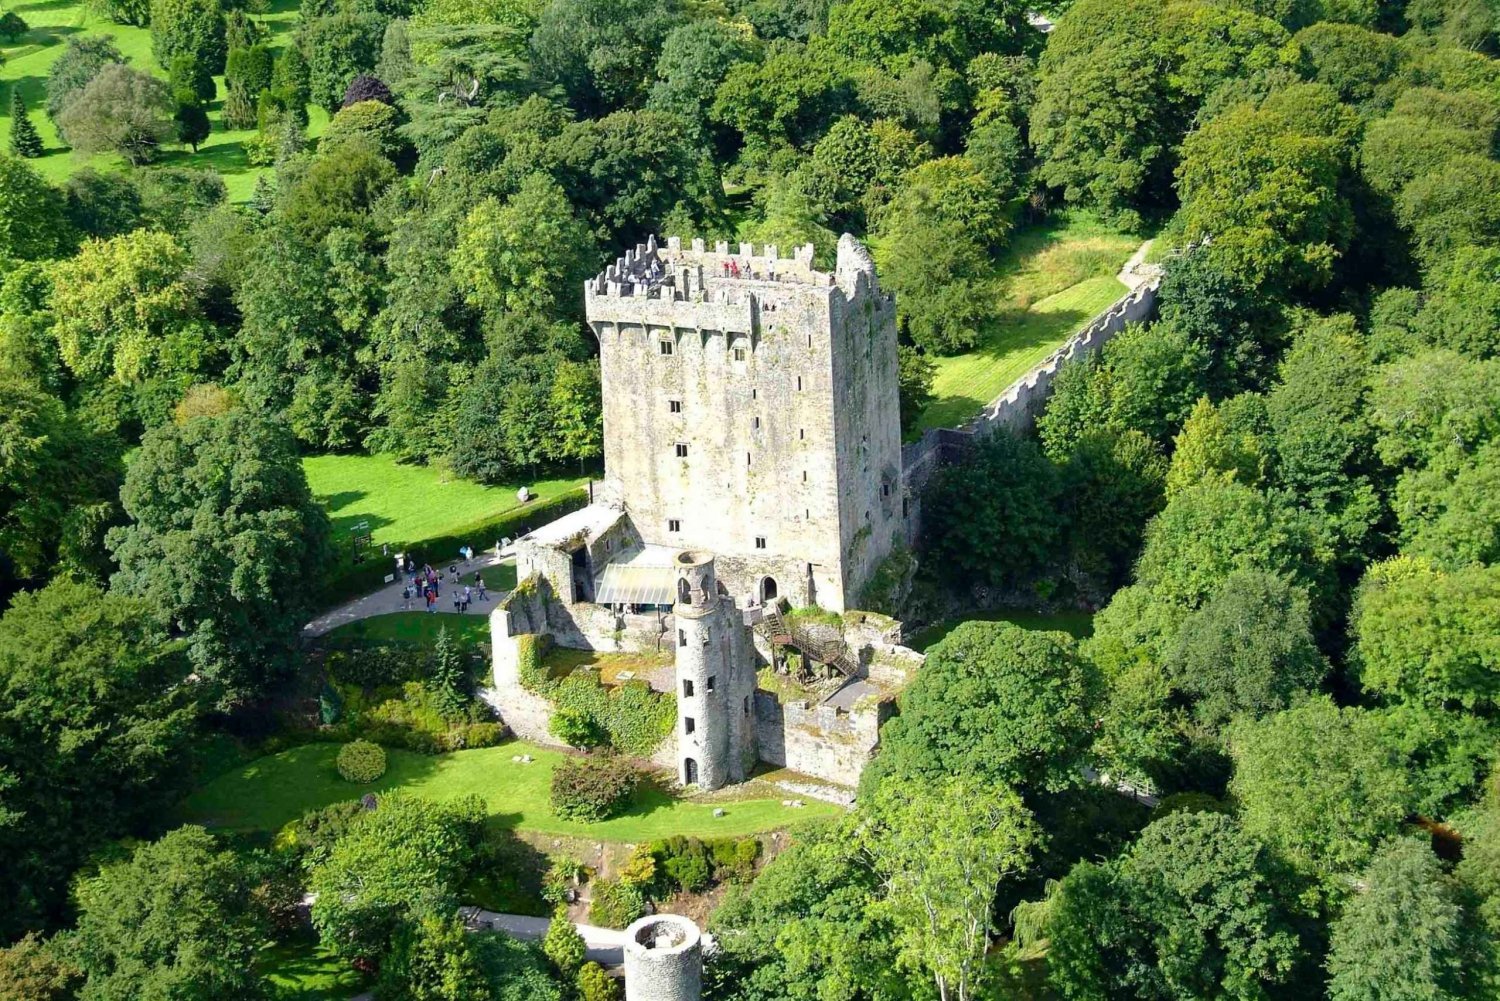 2 jours à Cork, au château de Blarney et à l'anneau du Kerry